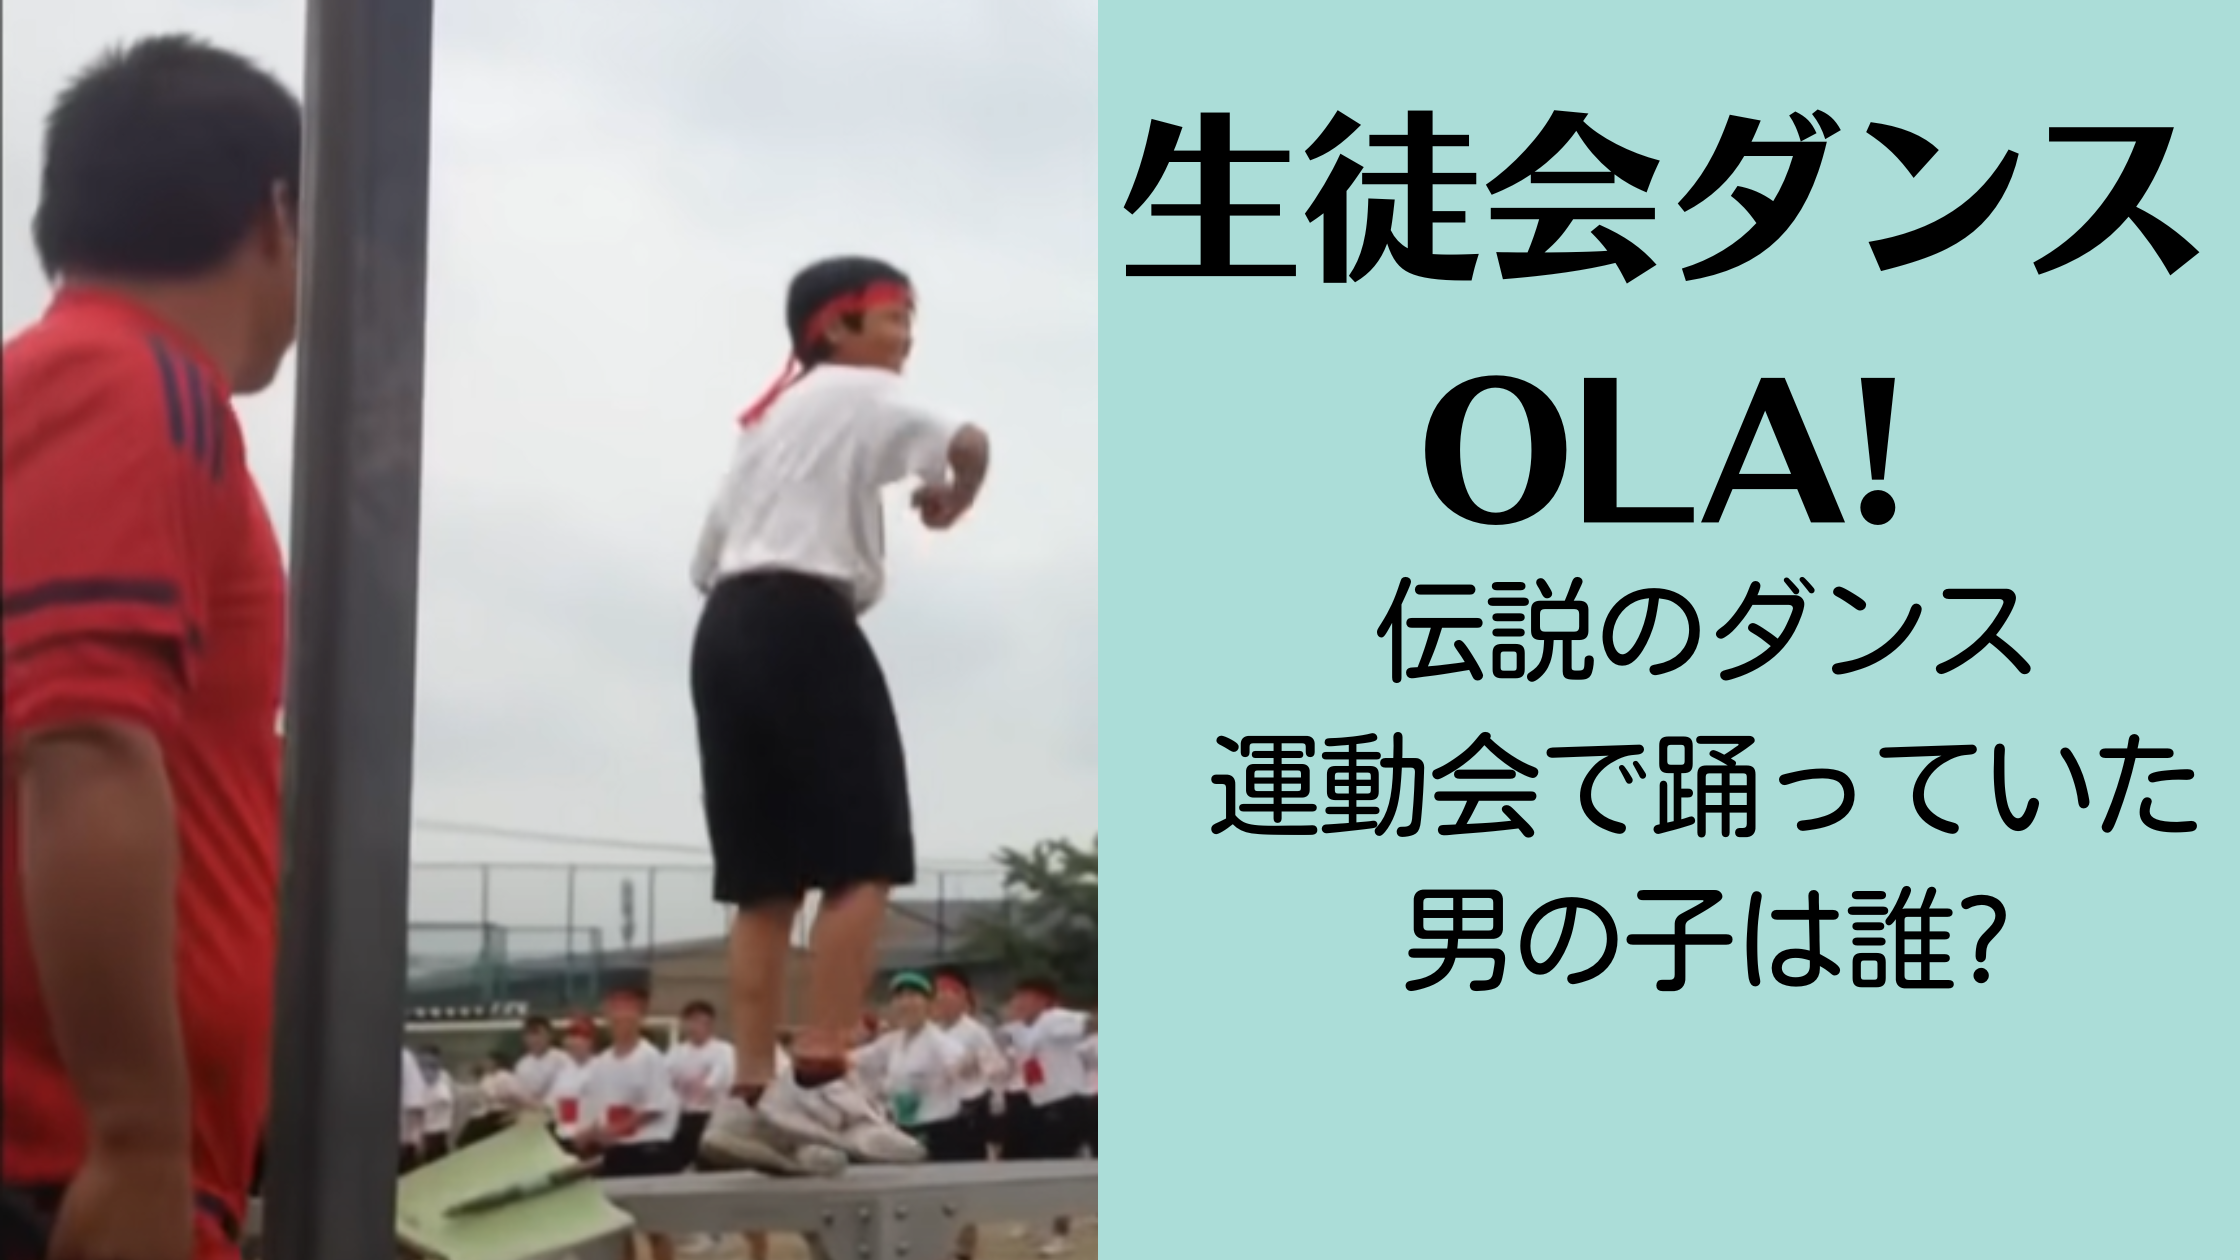 【伝説のダンス】Ola!の生徒会ダンスを運動会で踊っていた男の子は誰